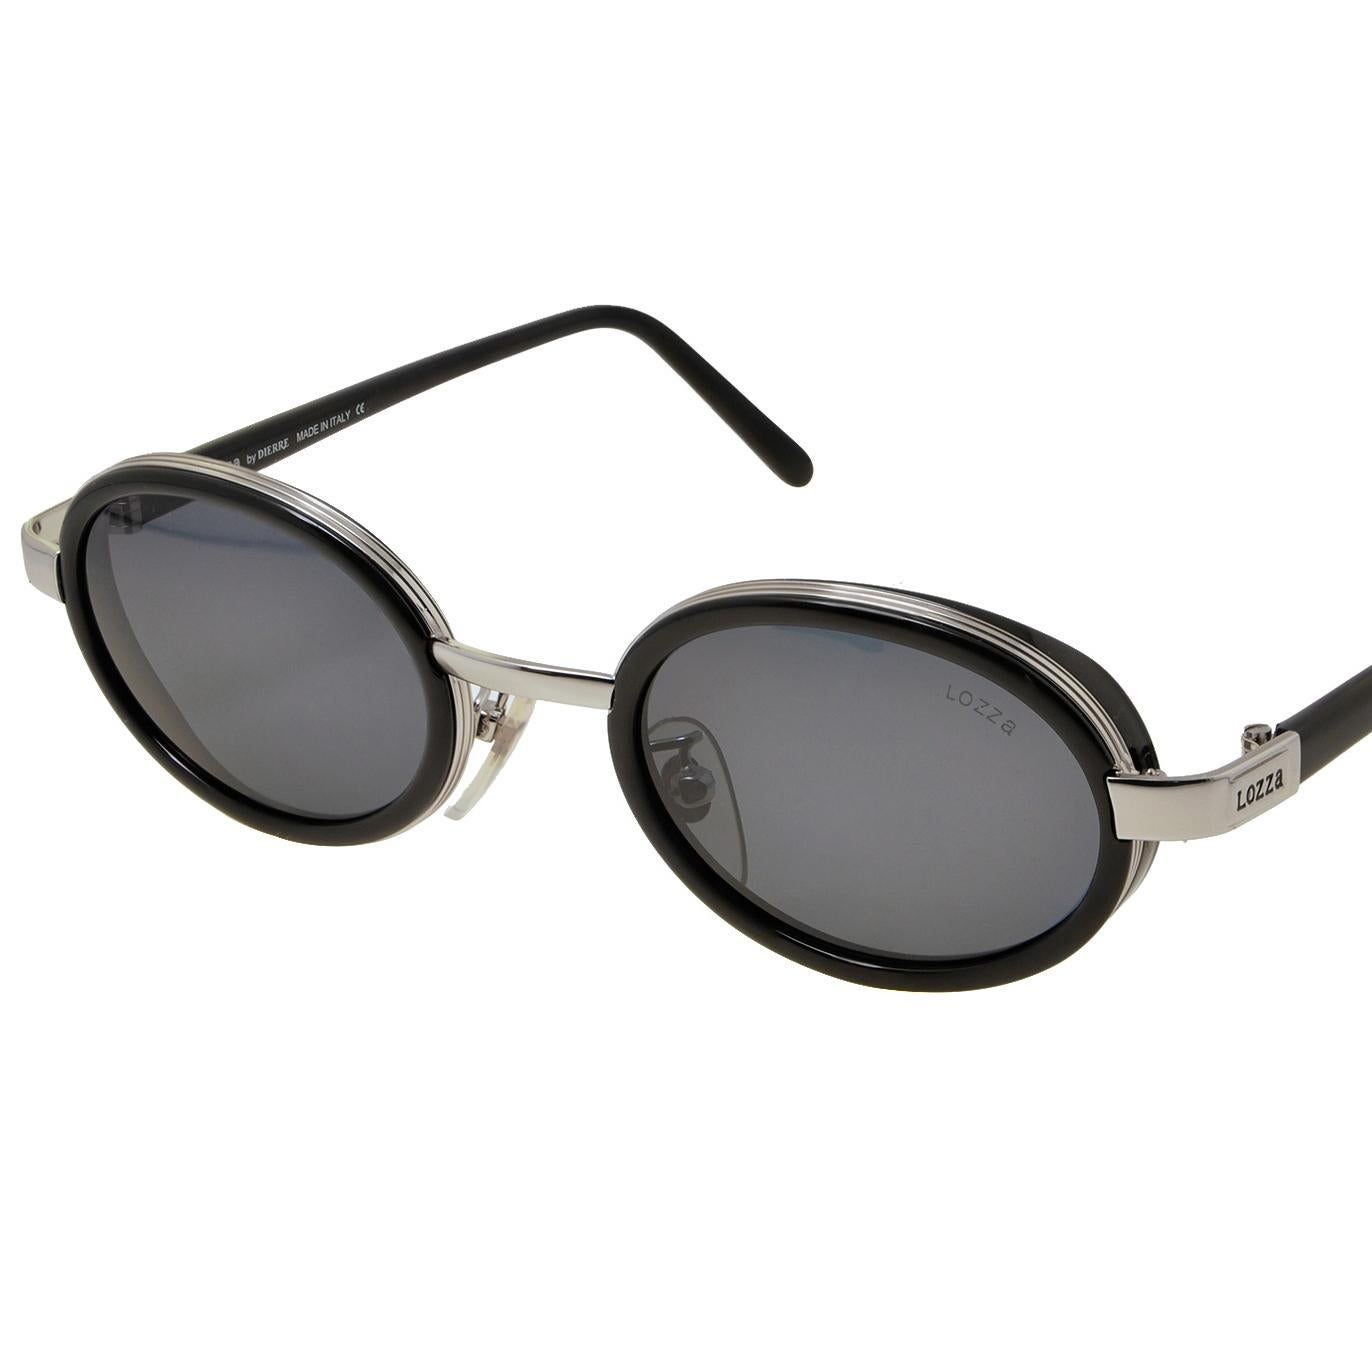 Lozza wurde 1878 gegründet und ist die älteste Brillenmarke Italiens, die bei der Auswahl von Stilen und MATERIALIEN immer Vorreiter war: in den 20er Jahren brachte sie die erste Sonnenbrille aus Zellulose auf den Markt und in den 30er Jahren die